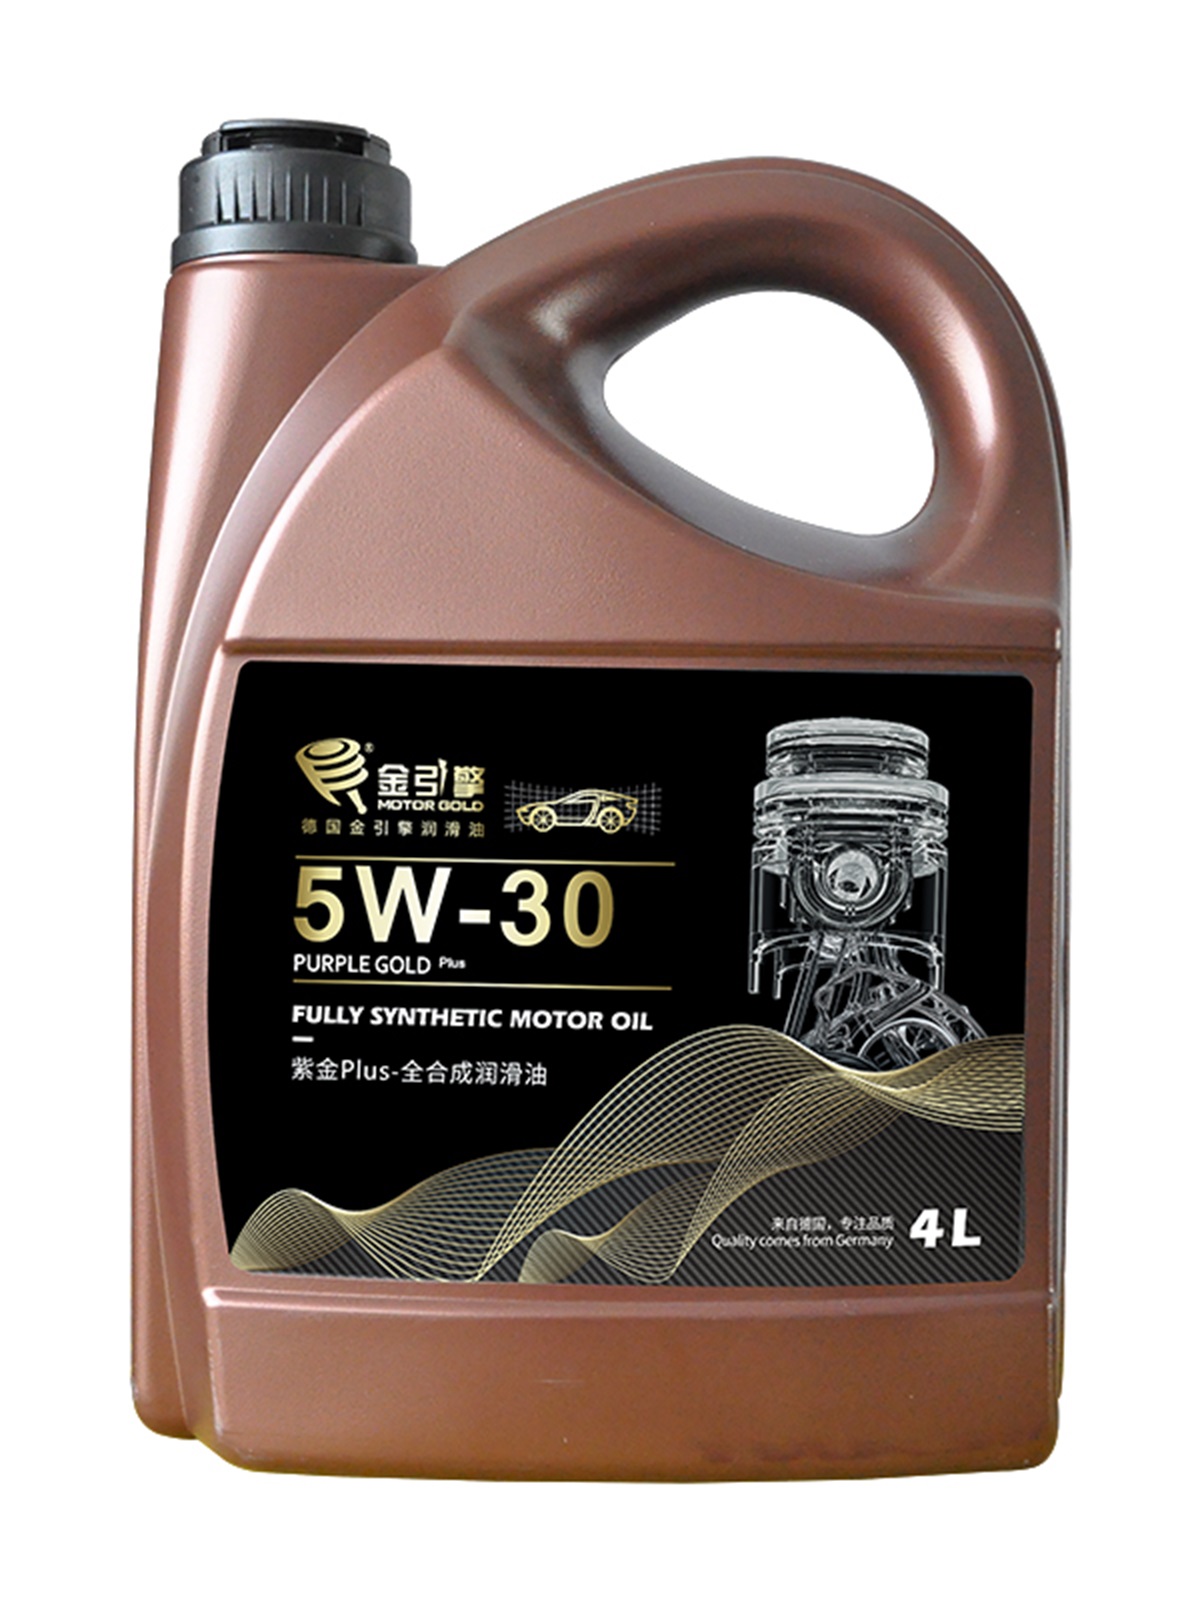 紫金Plus 5W-30 全合成润滑油